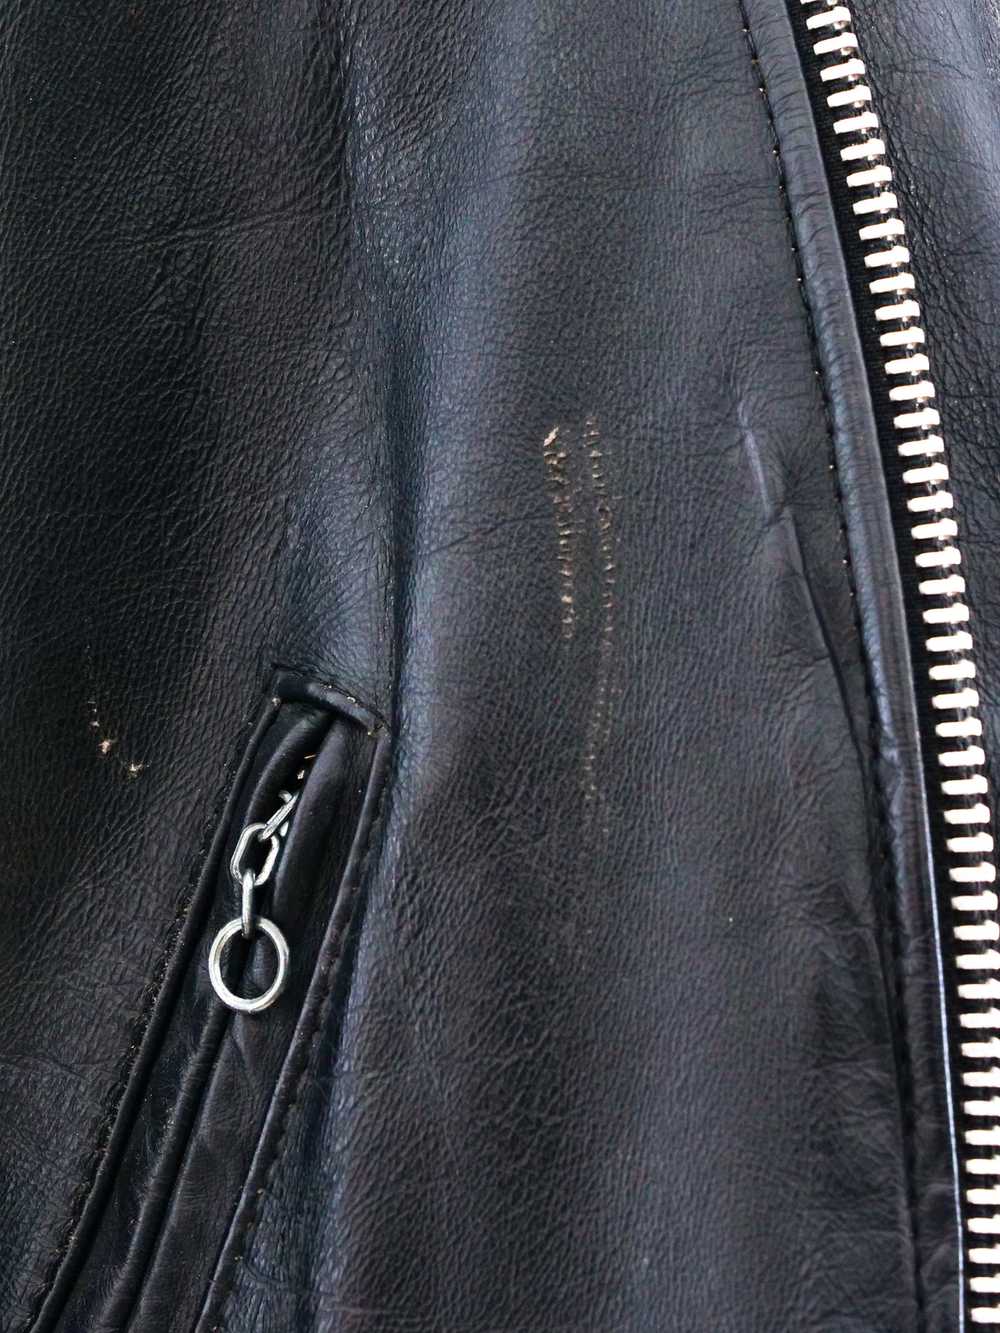 Leather Motorcycle Jacket - image 6